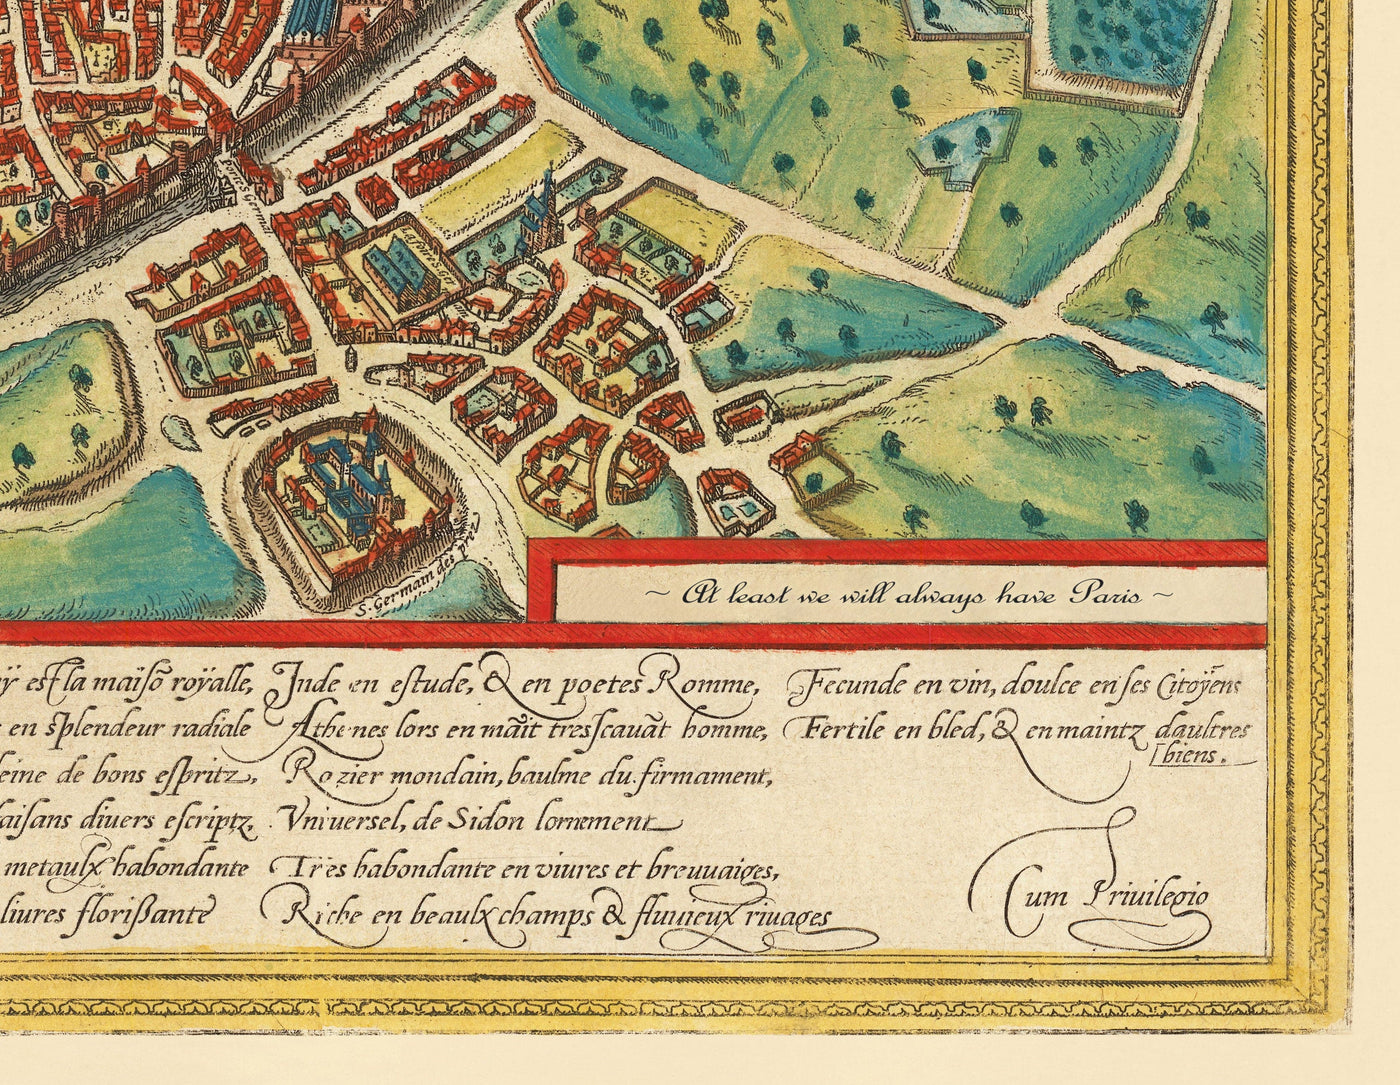 Ancienne carte d'Édimbourg, 1580 par Georg Braun - Château, Murs de la ville, Cathédrale Saint-Giles, Vieille Ville